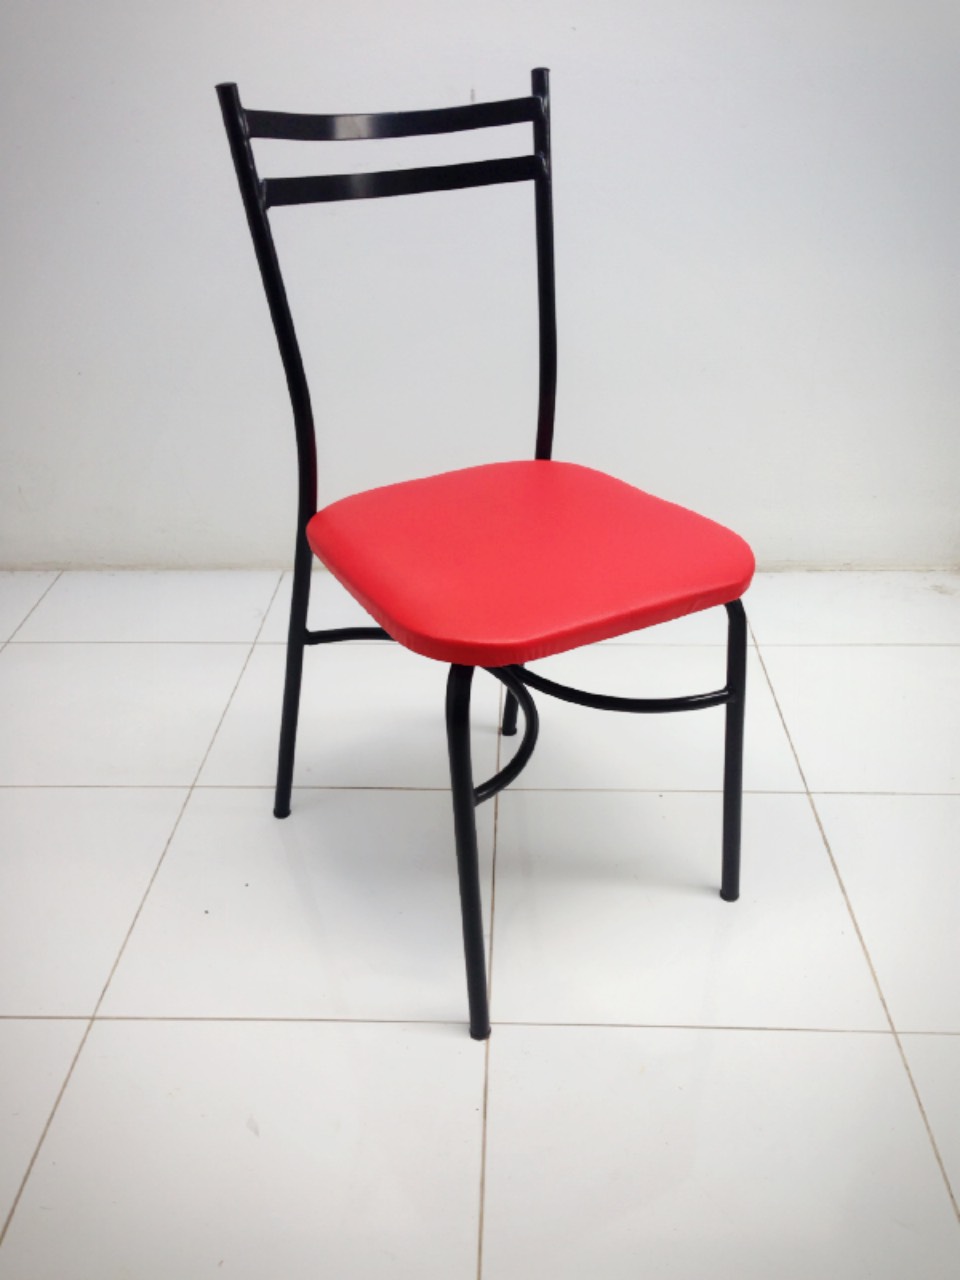 เก้าอี้อาหาร ราคา 390 บาท  เก้าอี้ มี 4 รุ่นให้เลือก  โทร. 099-326-0005 รูปที่ 1